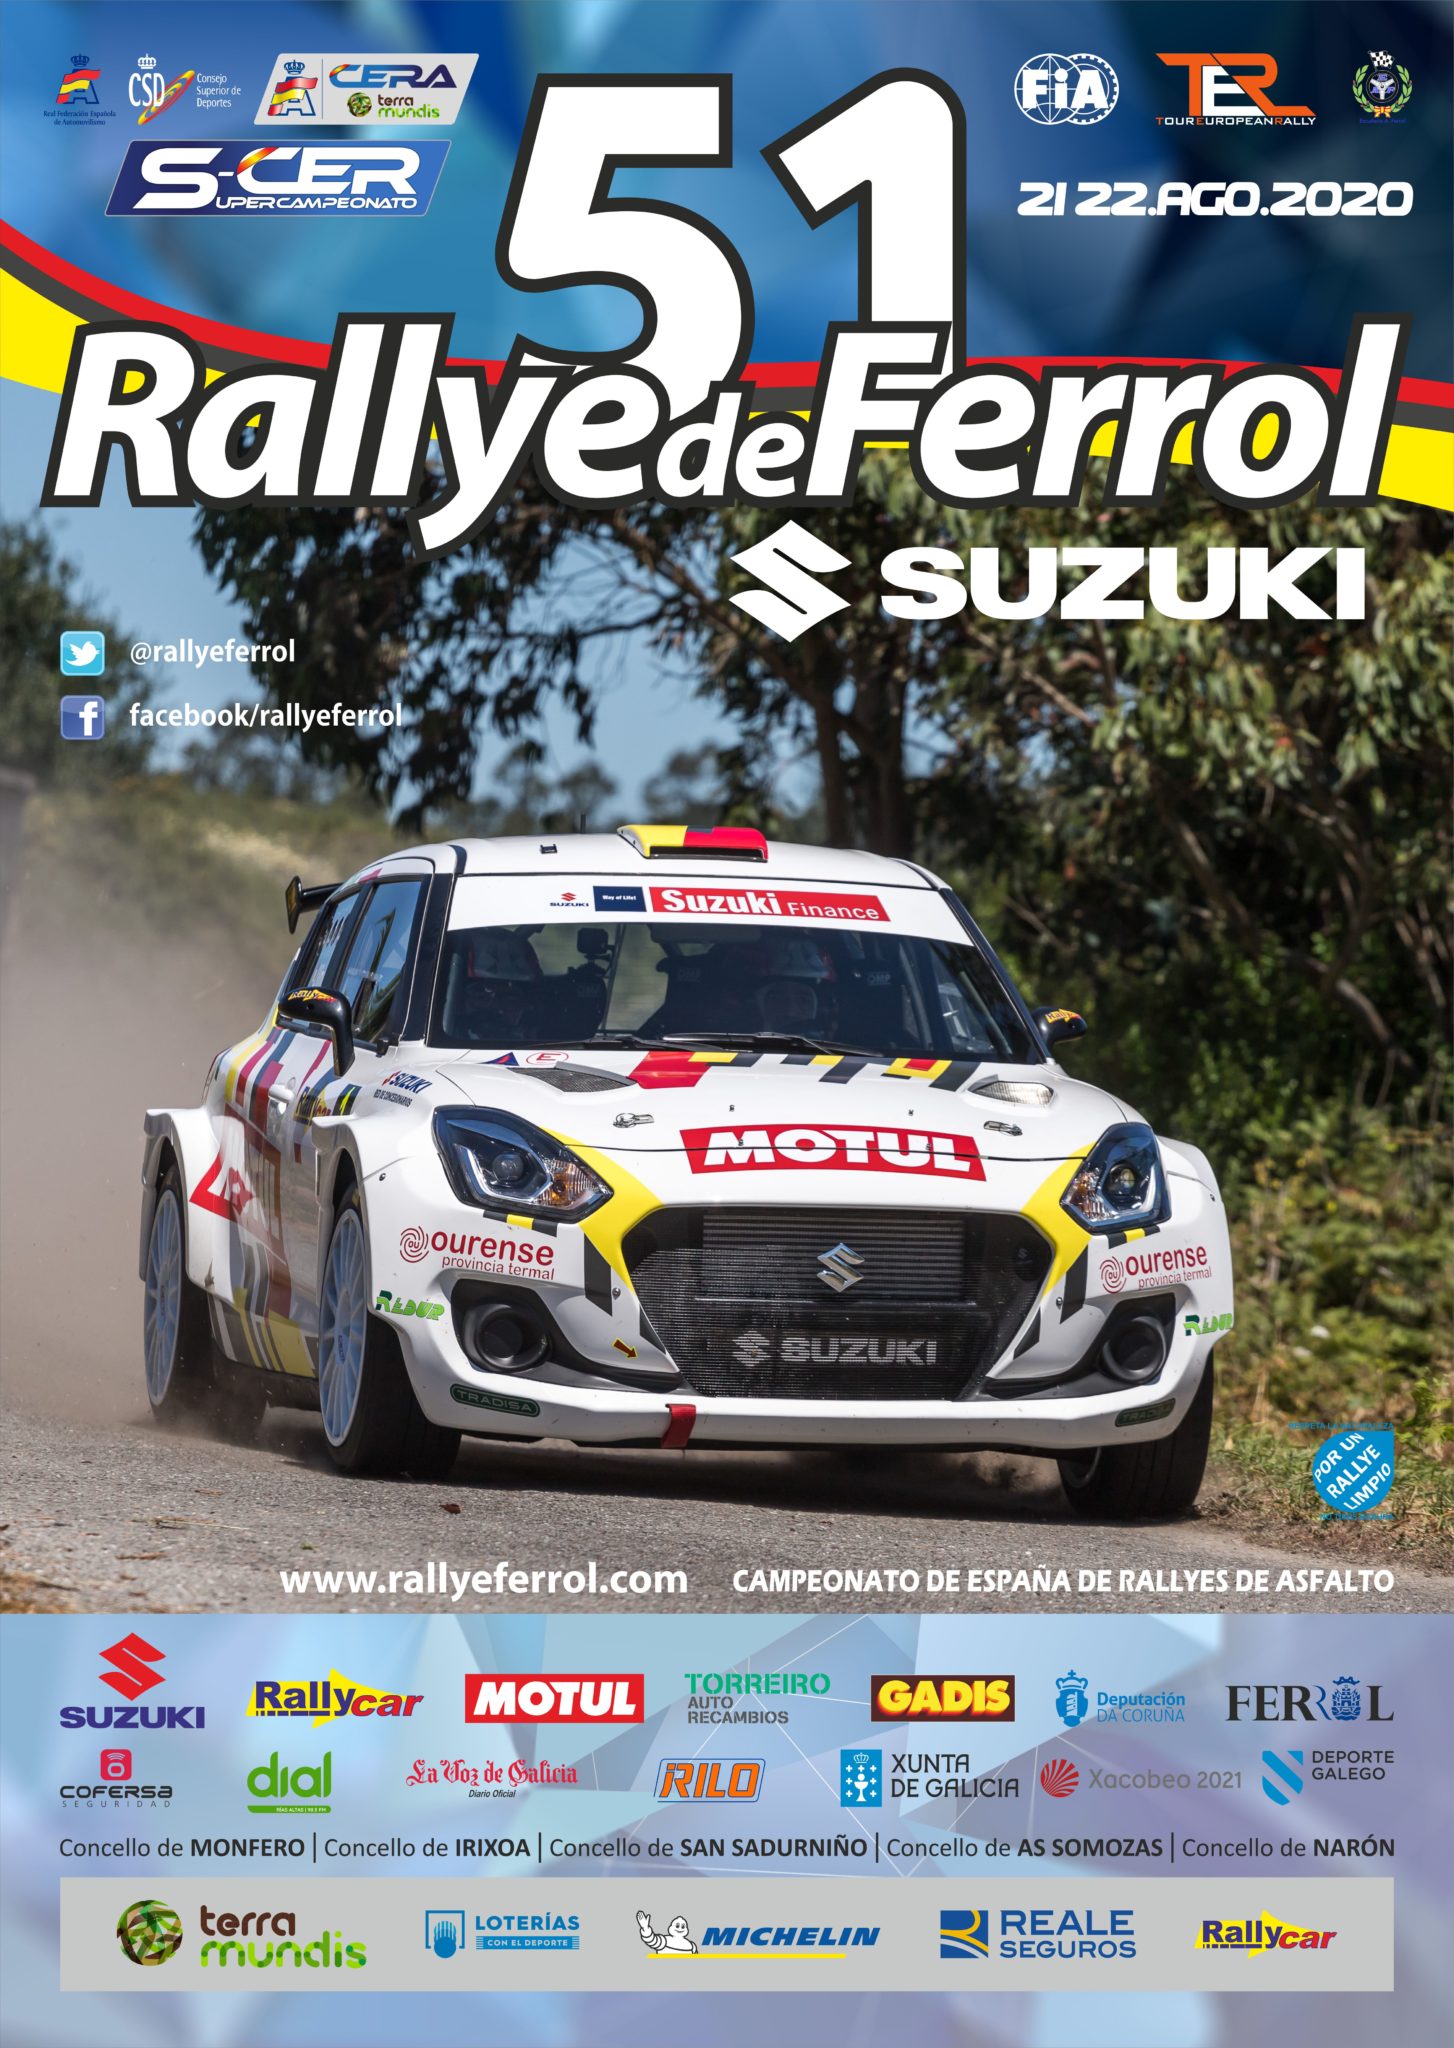 SCER + CERA + TER: 51º Rallye de Ferrol - Suzuki [21-22 Agosto] Cartel-Final-51-Rallye-de-Ferrol-Suzuki_low-1454x2048